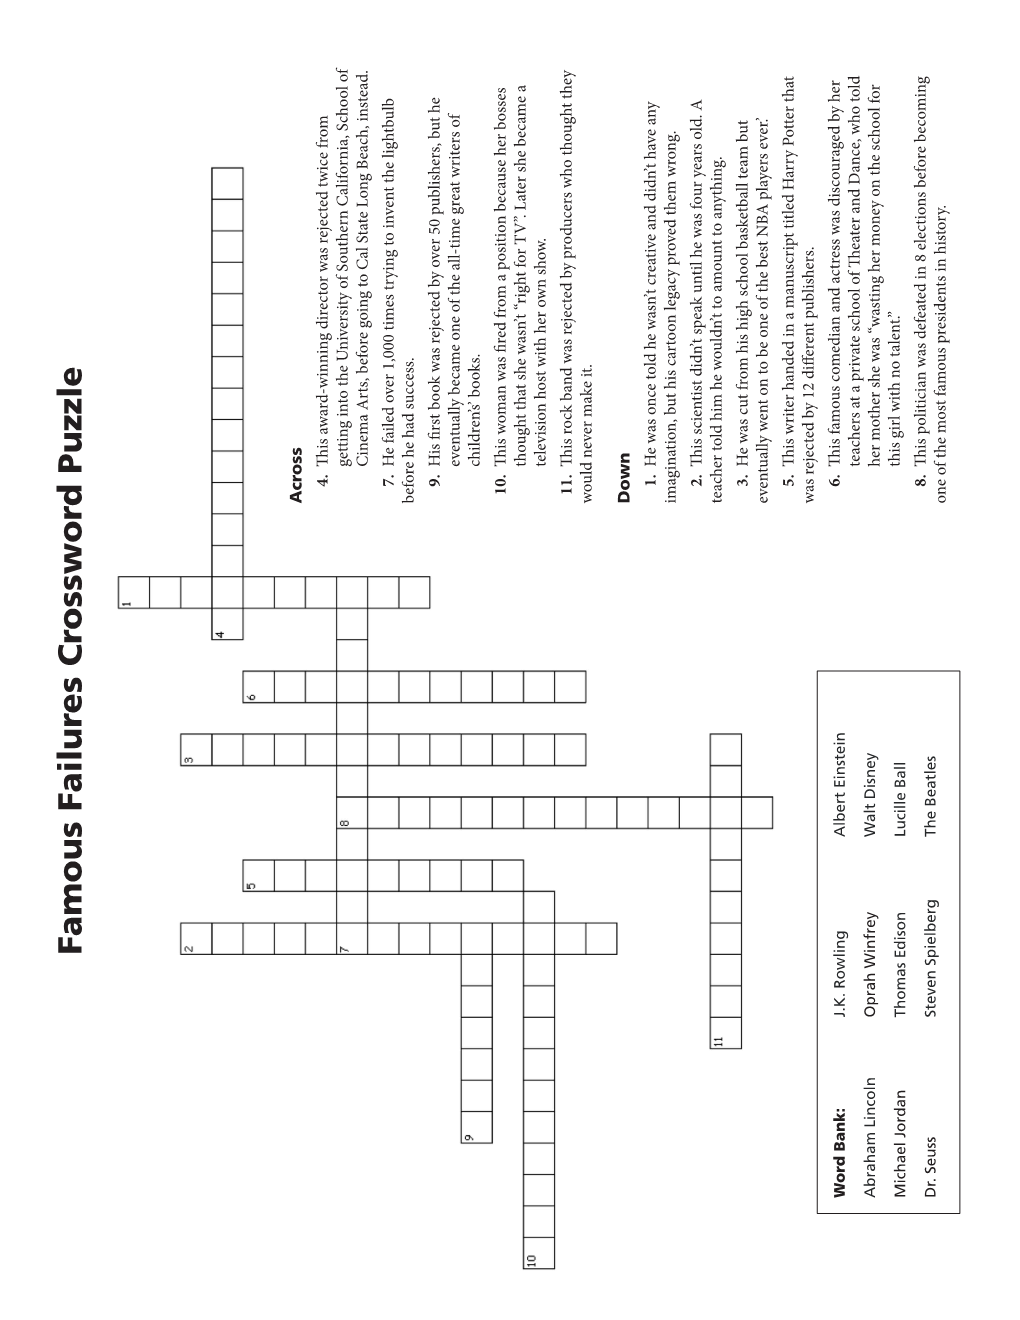 Famous Failures Crossword Puzzle